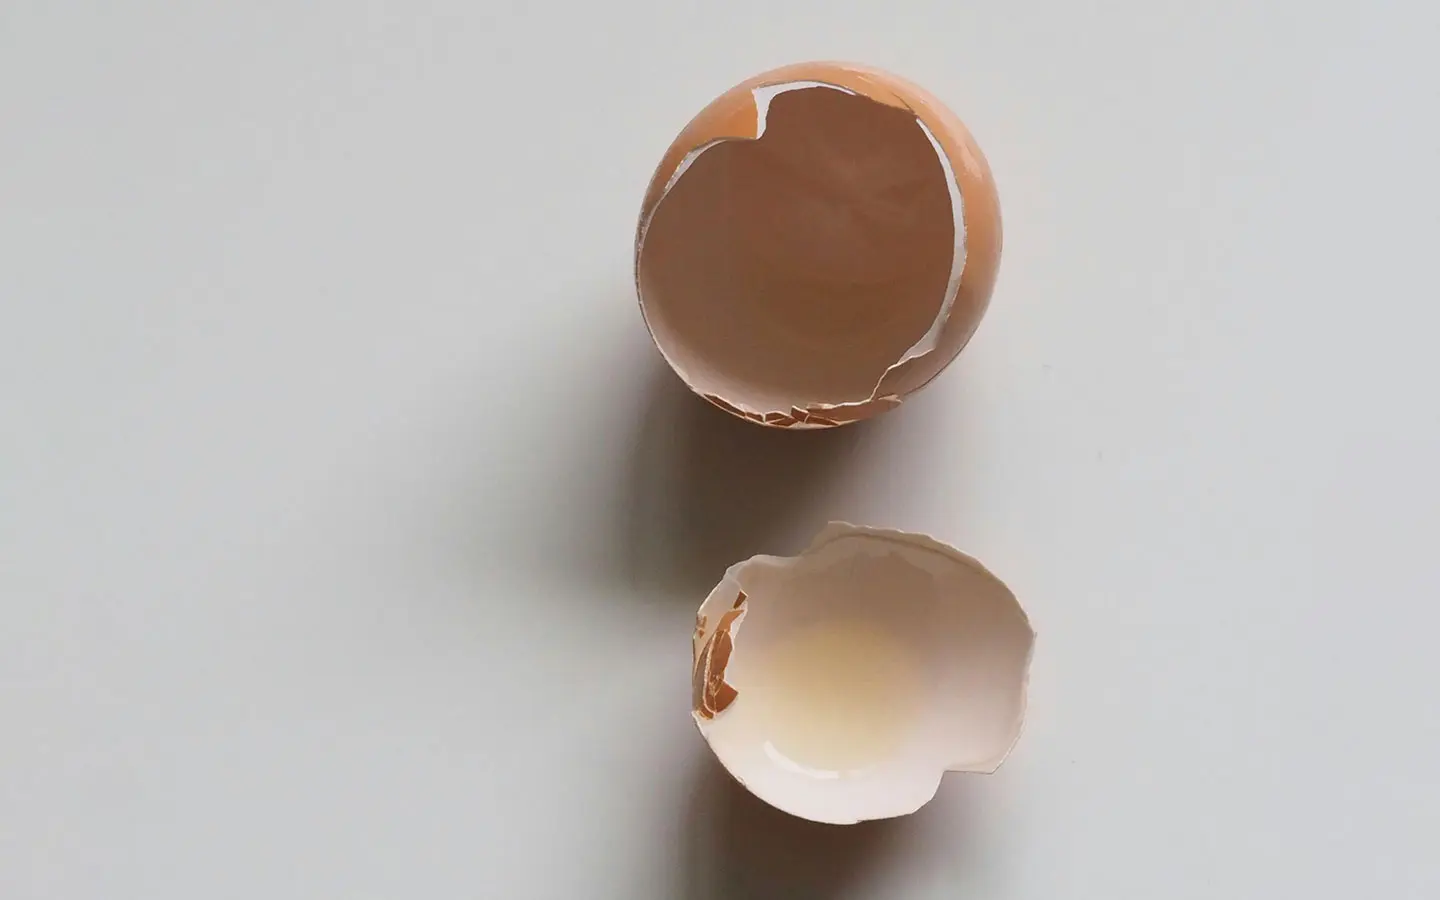 Crean biomaterial basado en cáscara de huevo para la regeneración ósea bucal